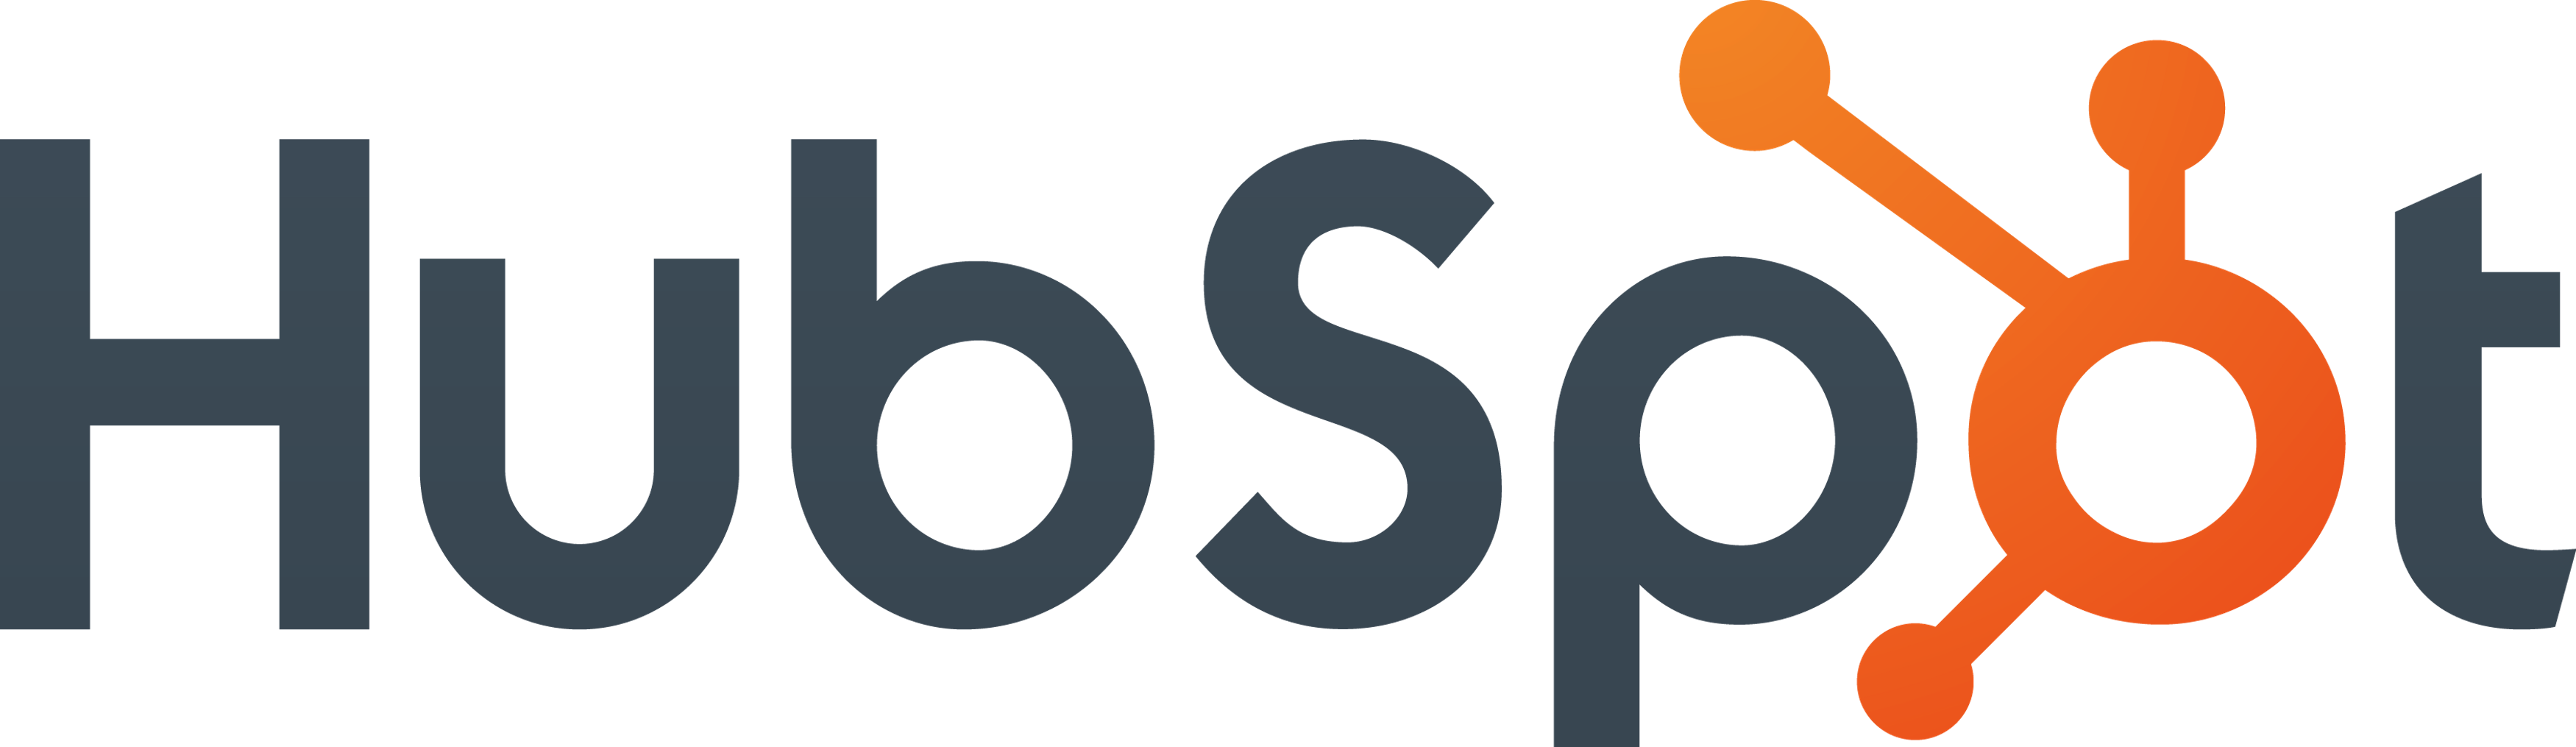 Top Startup CRM Software Logo: Hubspot